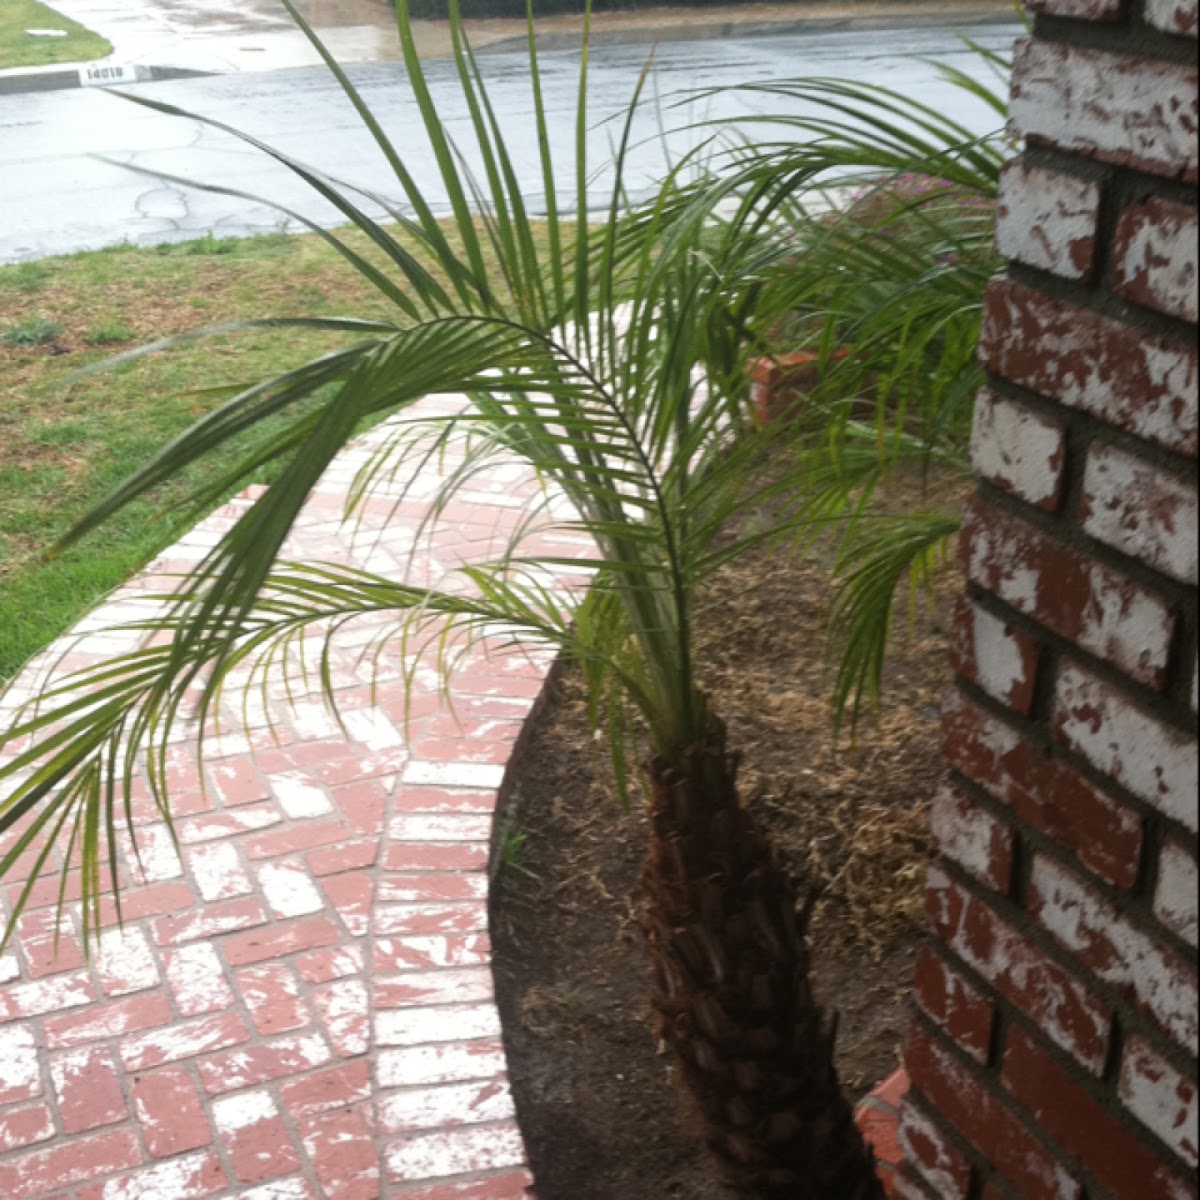 Pygmy palm